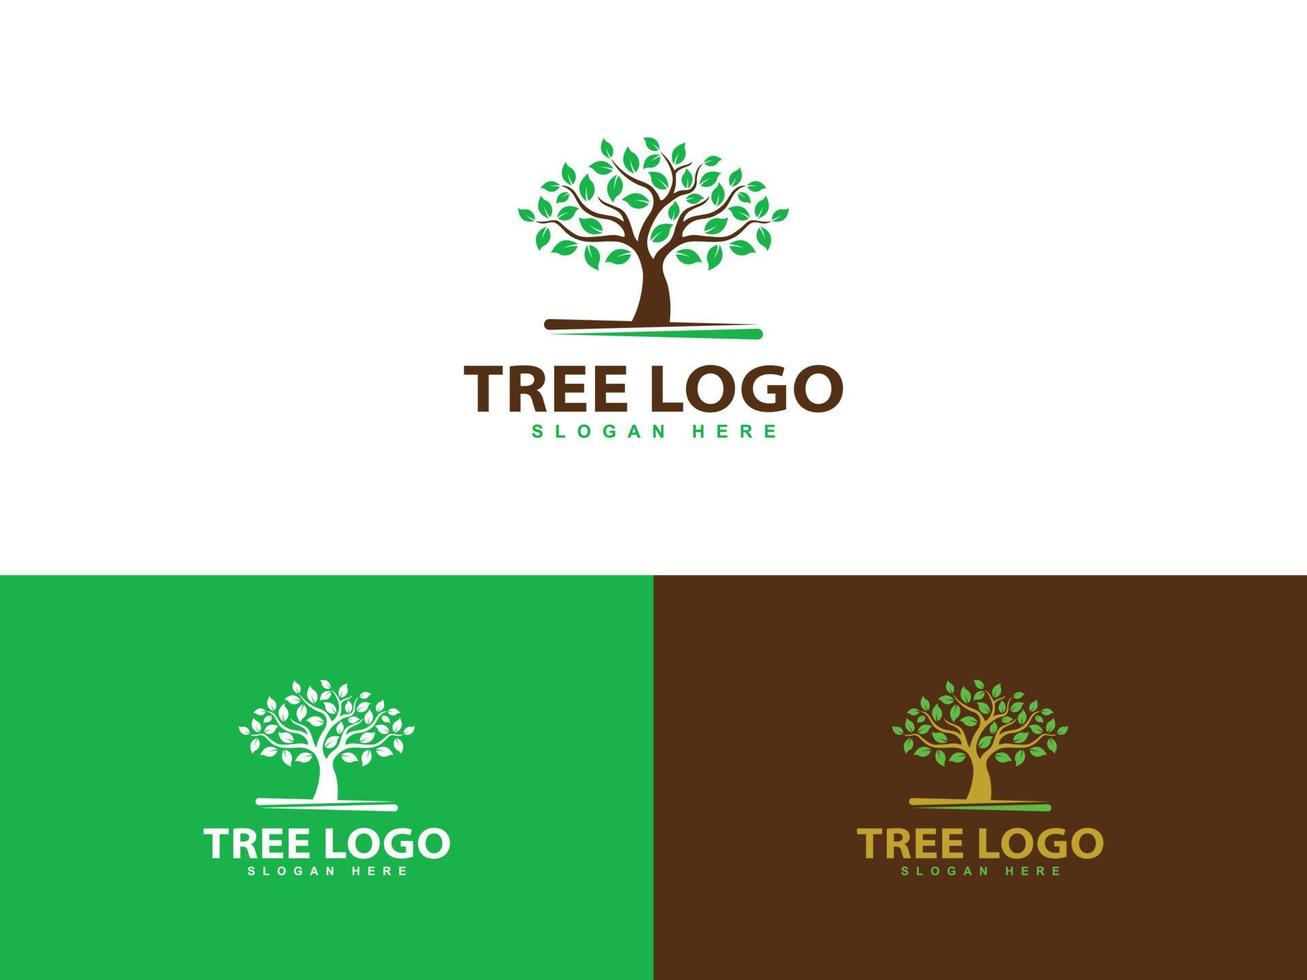 disegno astratto del logo dell'albero, modello vettoriale del logo dell'albero della vita